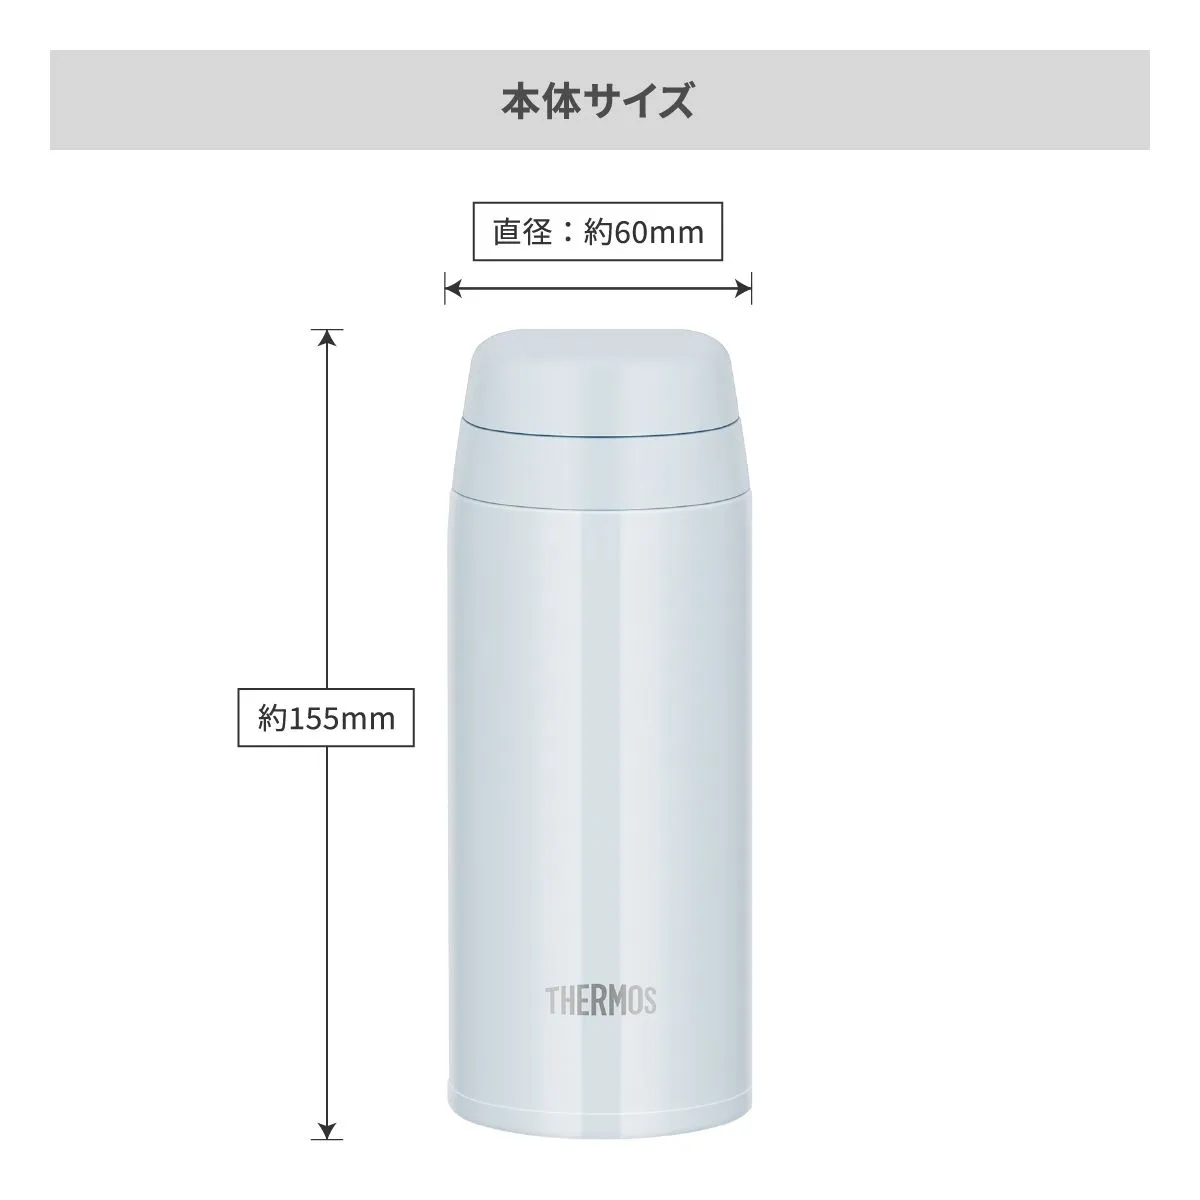 サーモス 真空断熱ケータイマグ 250ml【オリジナルステンレスボトル / レーザー彫刻】 画像5